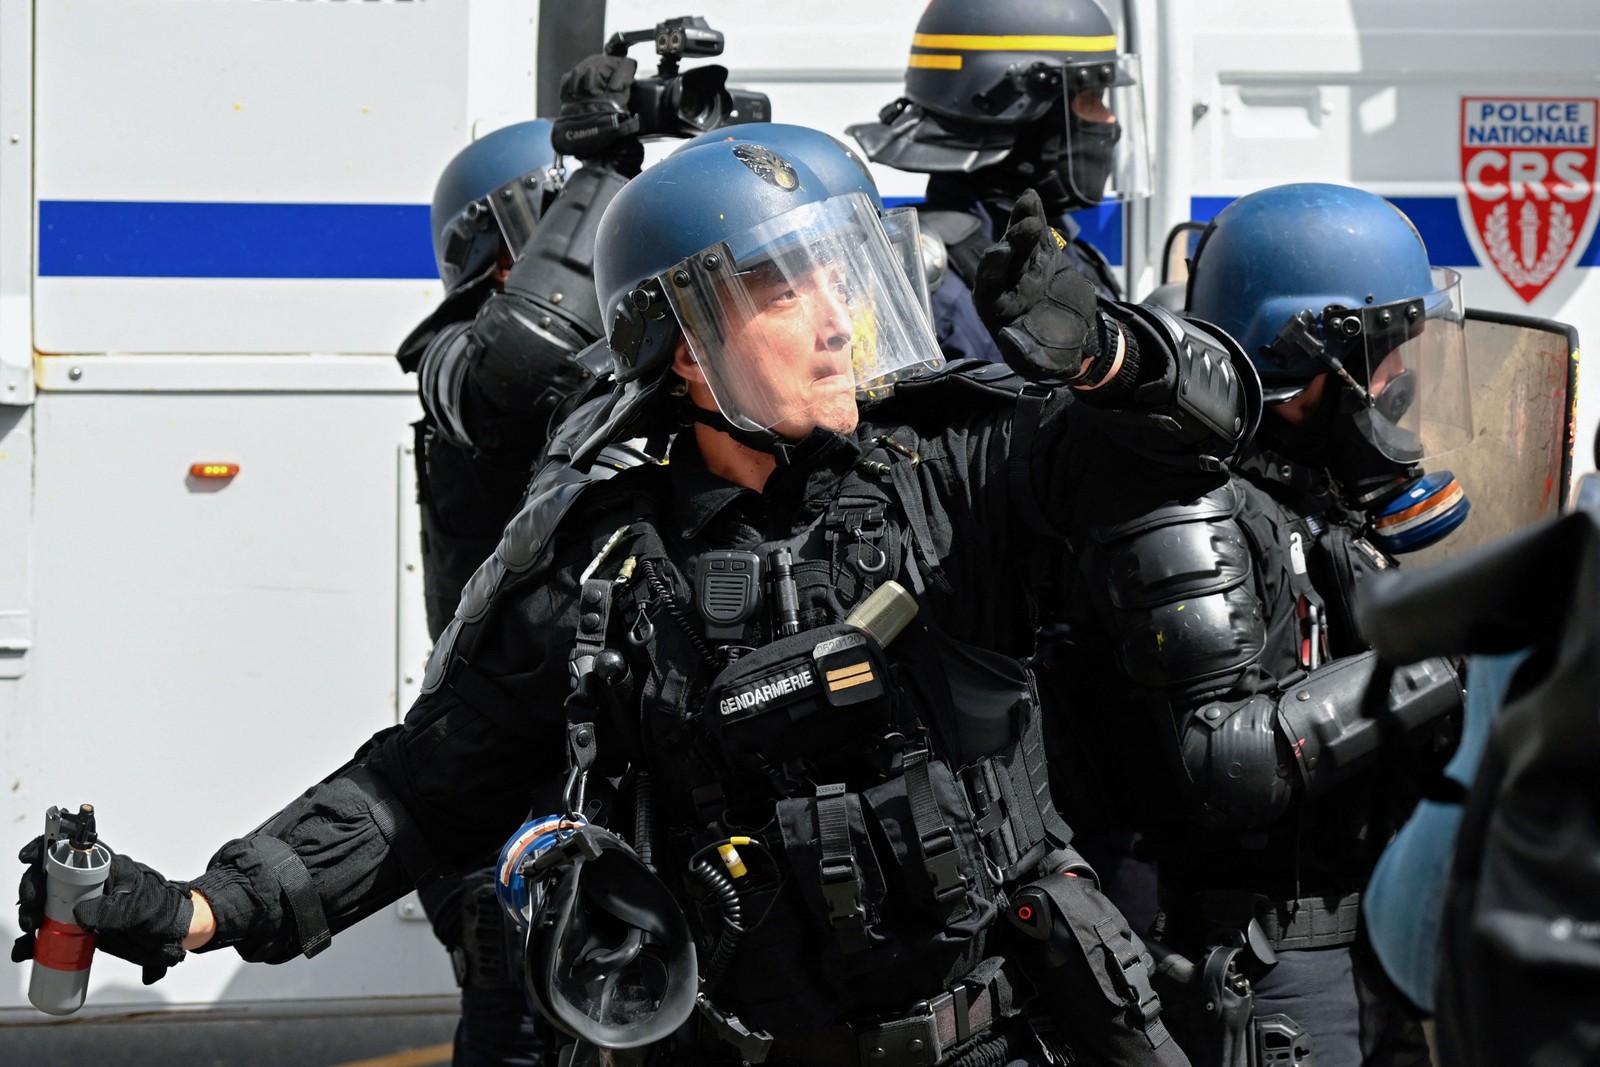 Policial francês lança uma granada de gás lacrimogêneo contra manifestantes durante protesto em Rennes — Foto: Damien MEYER / AFP